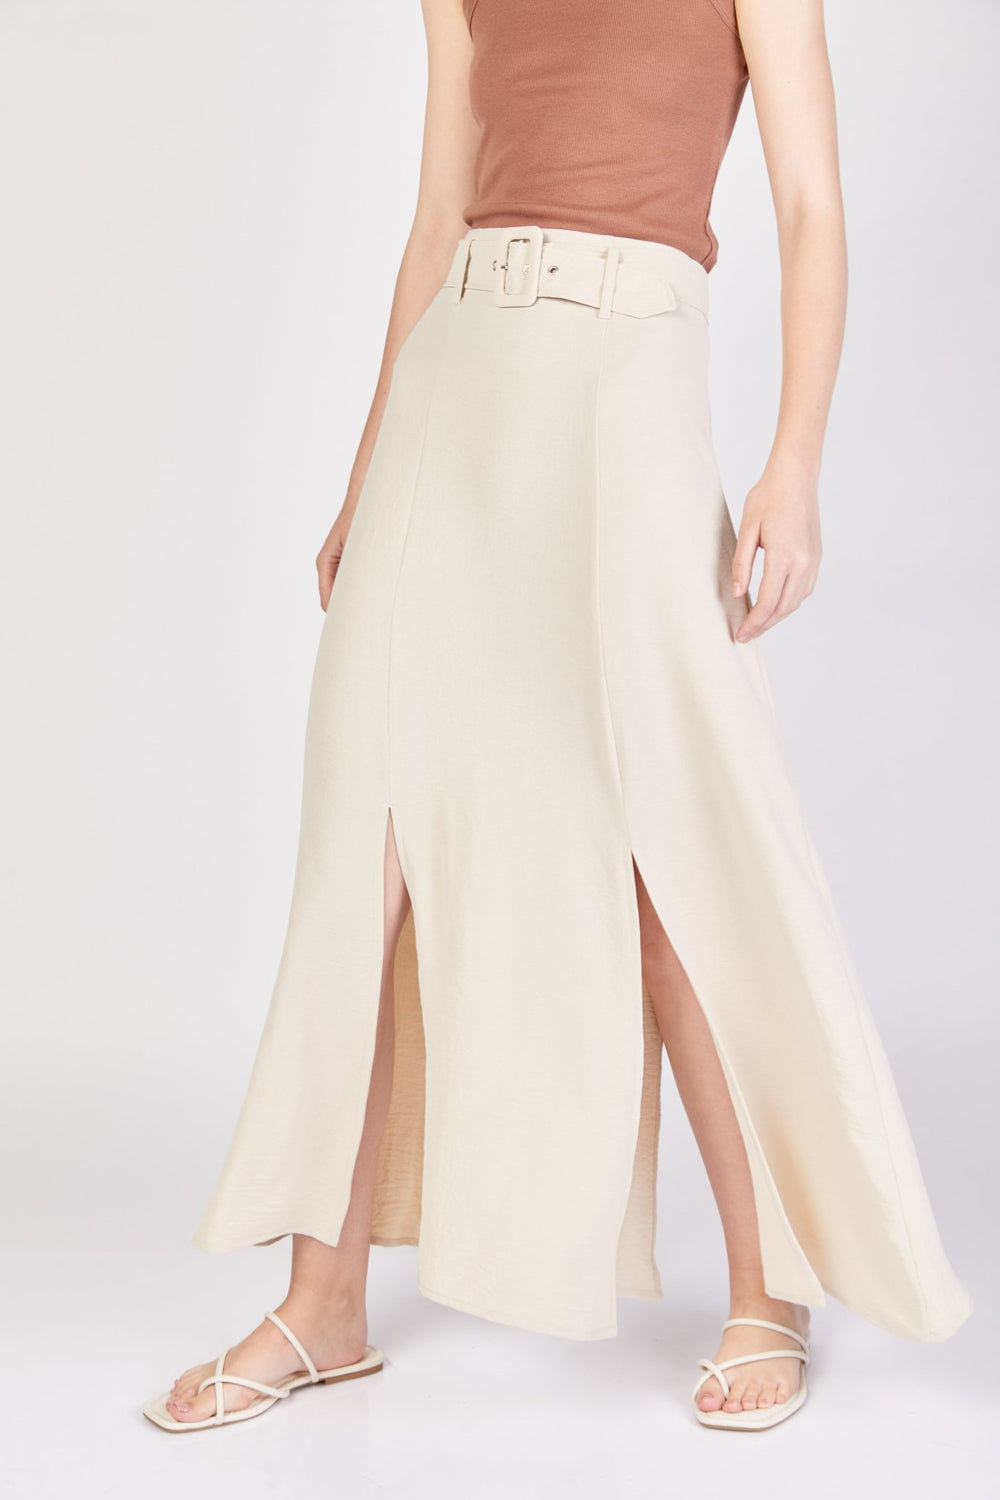 חצאית לינן מקסי בצבע אופוייט - Moi Collection